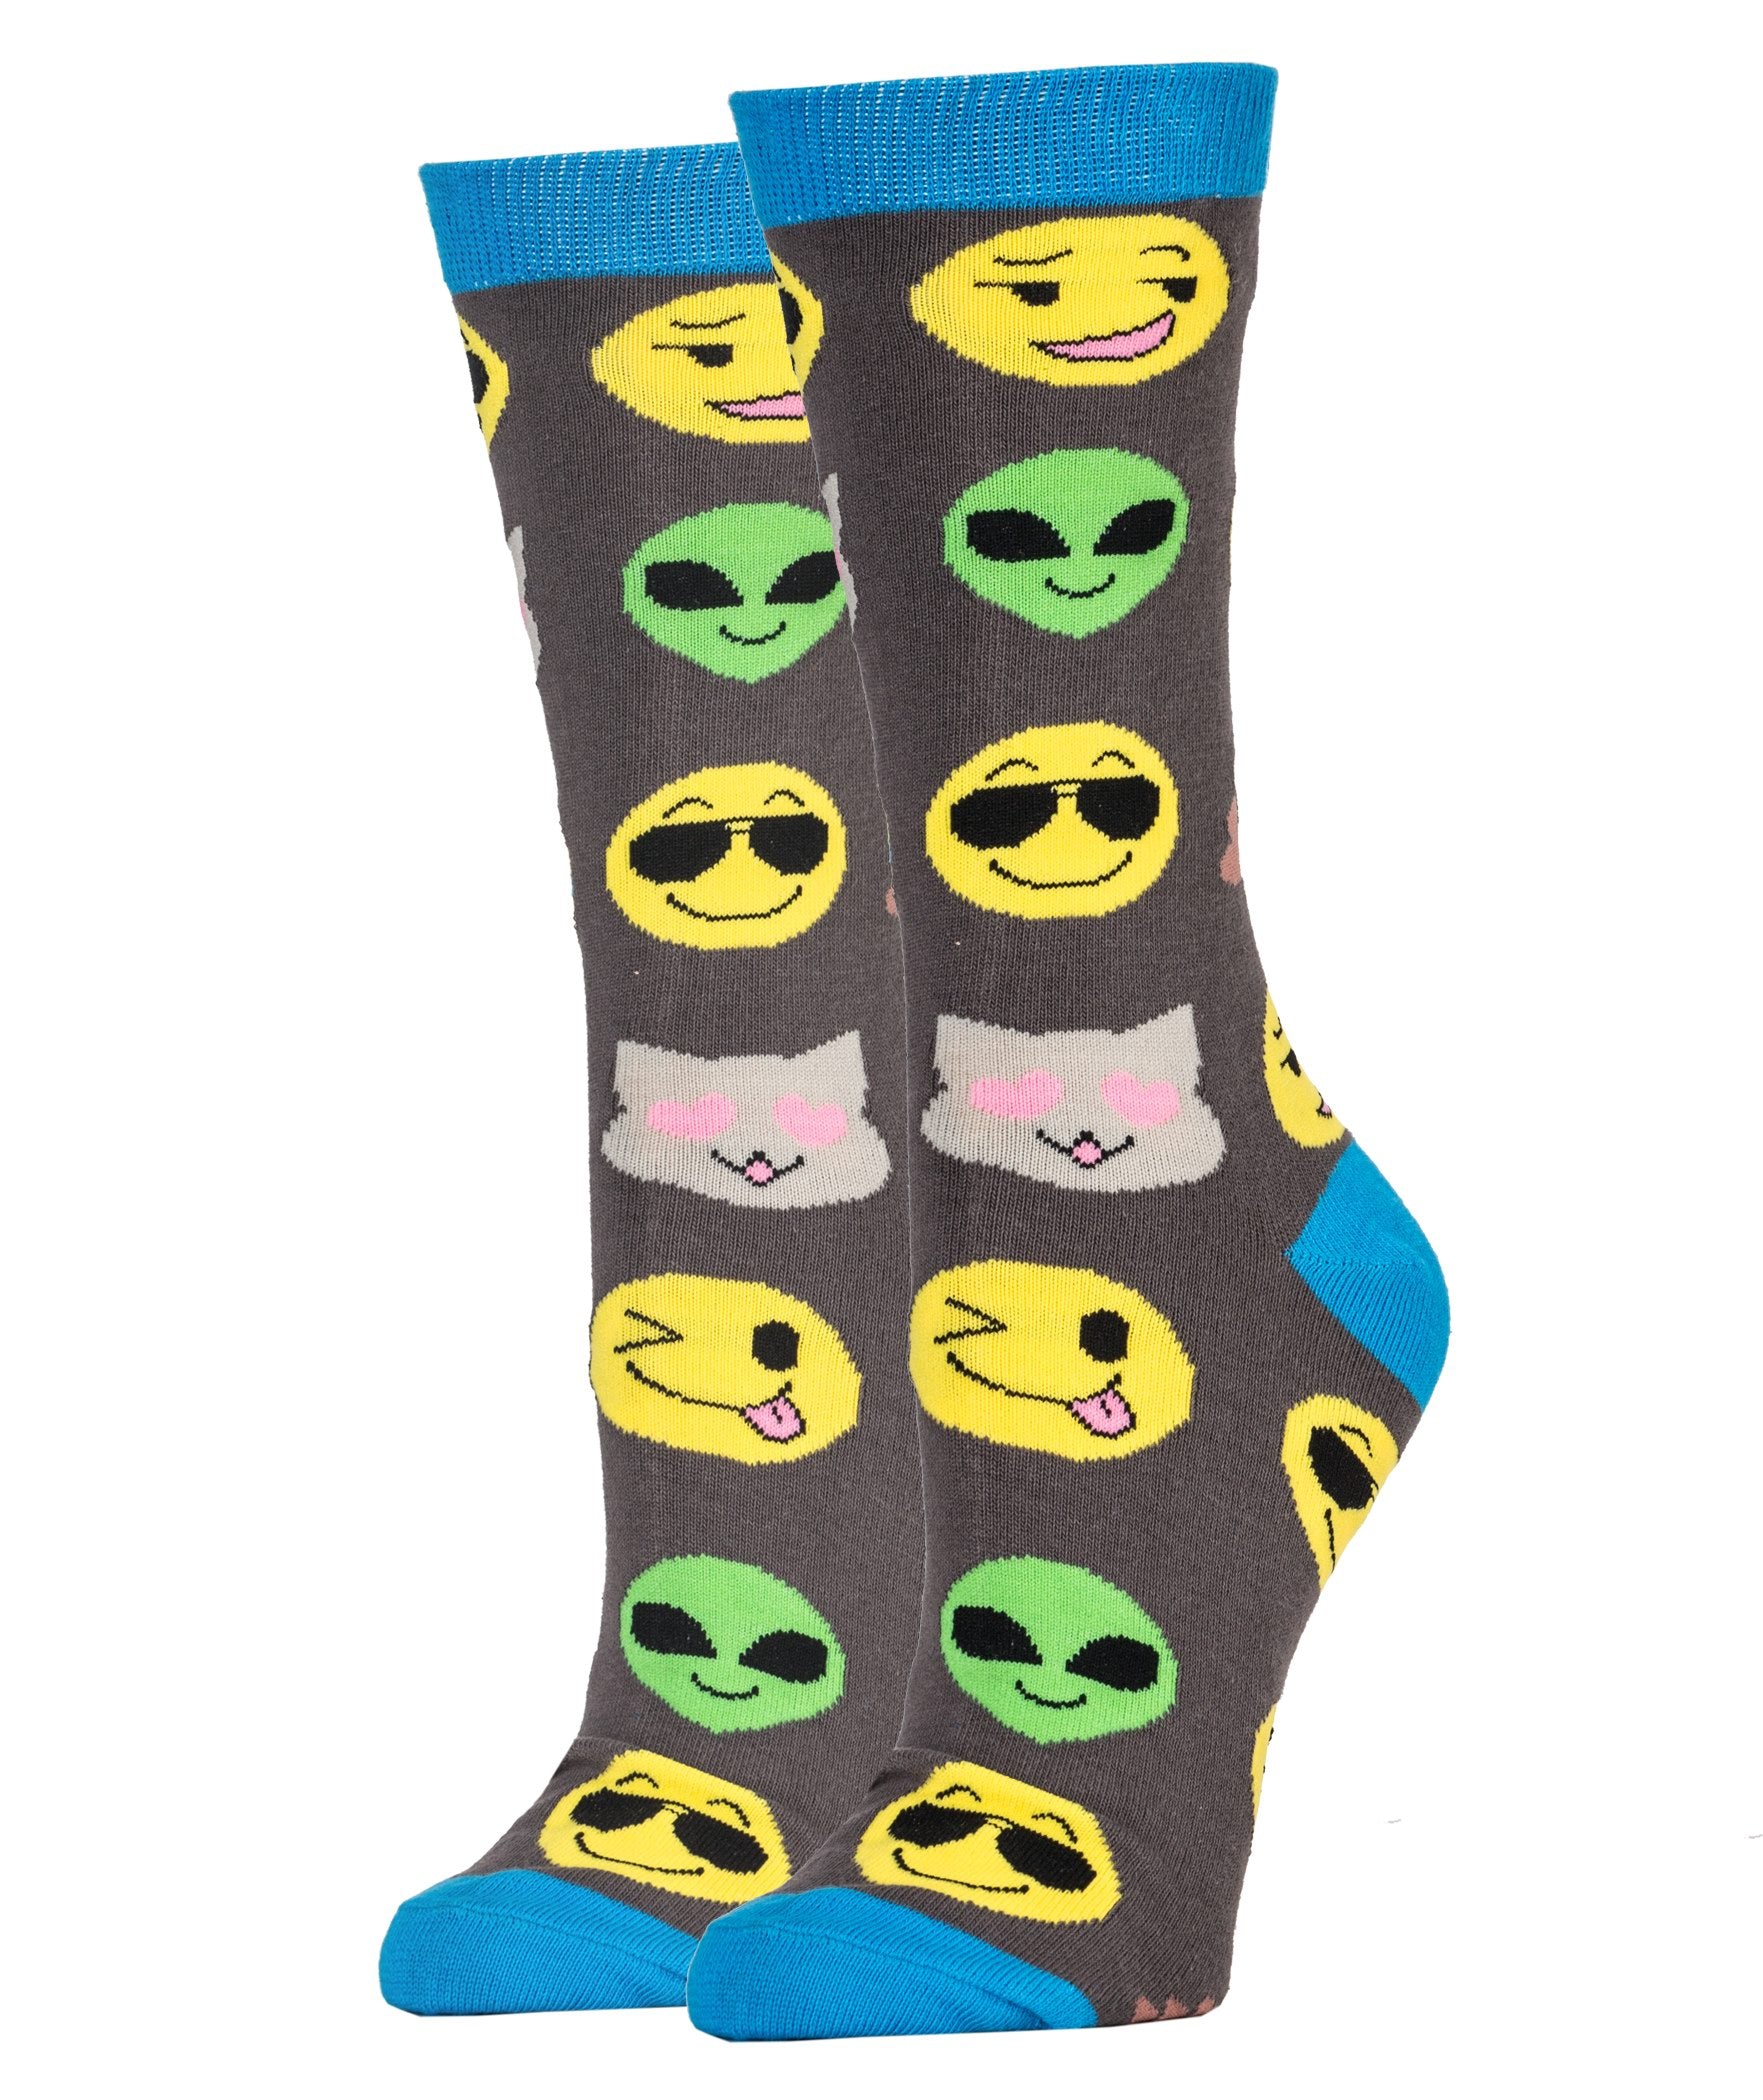 Emoji Me Socks | Novelty Crew Socks For Women